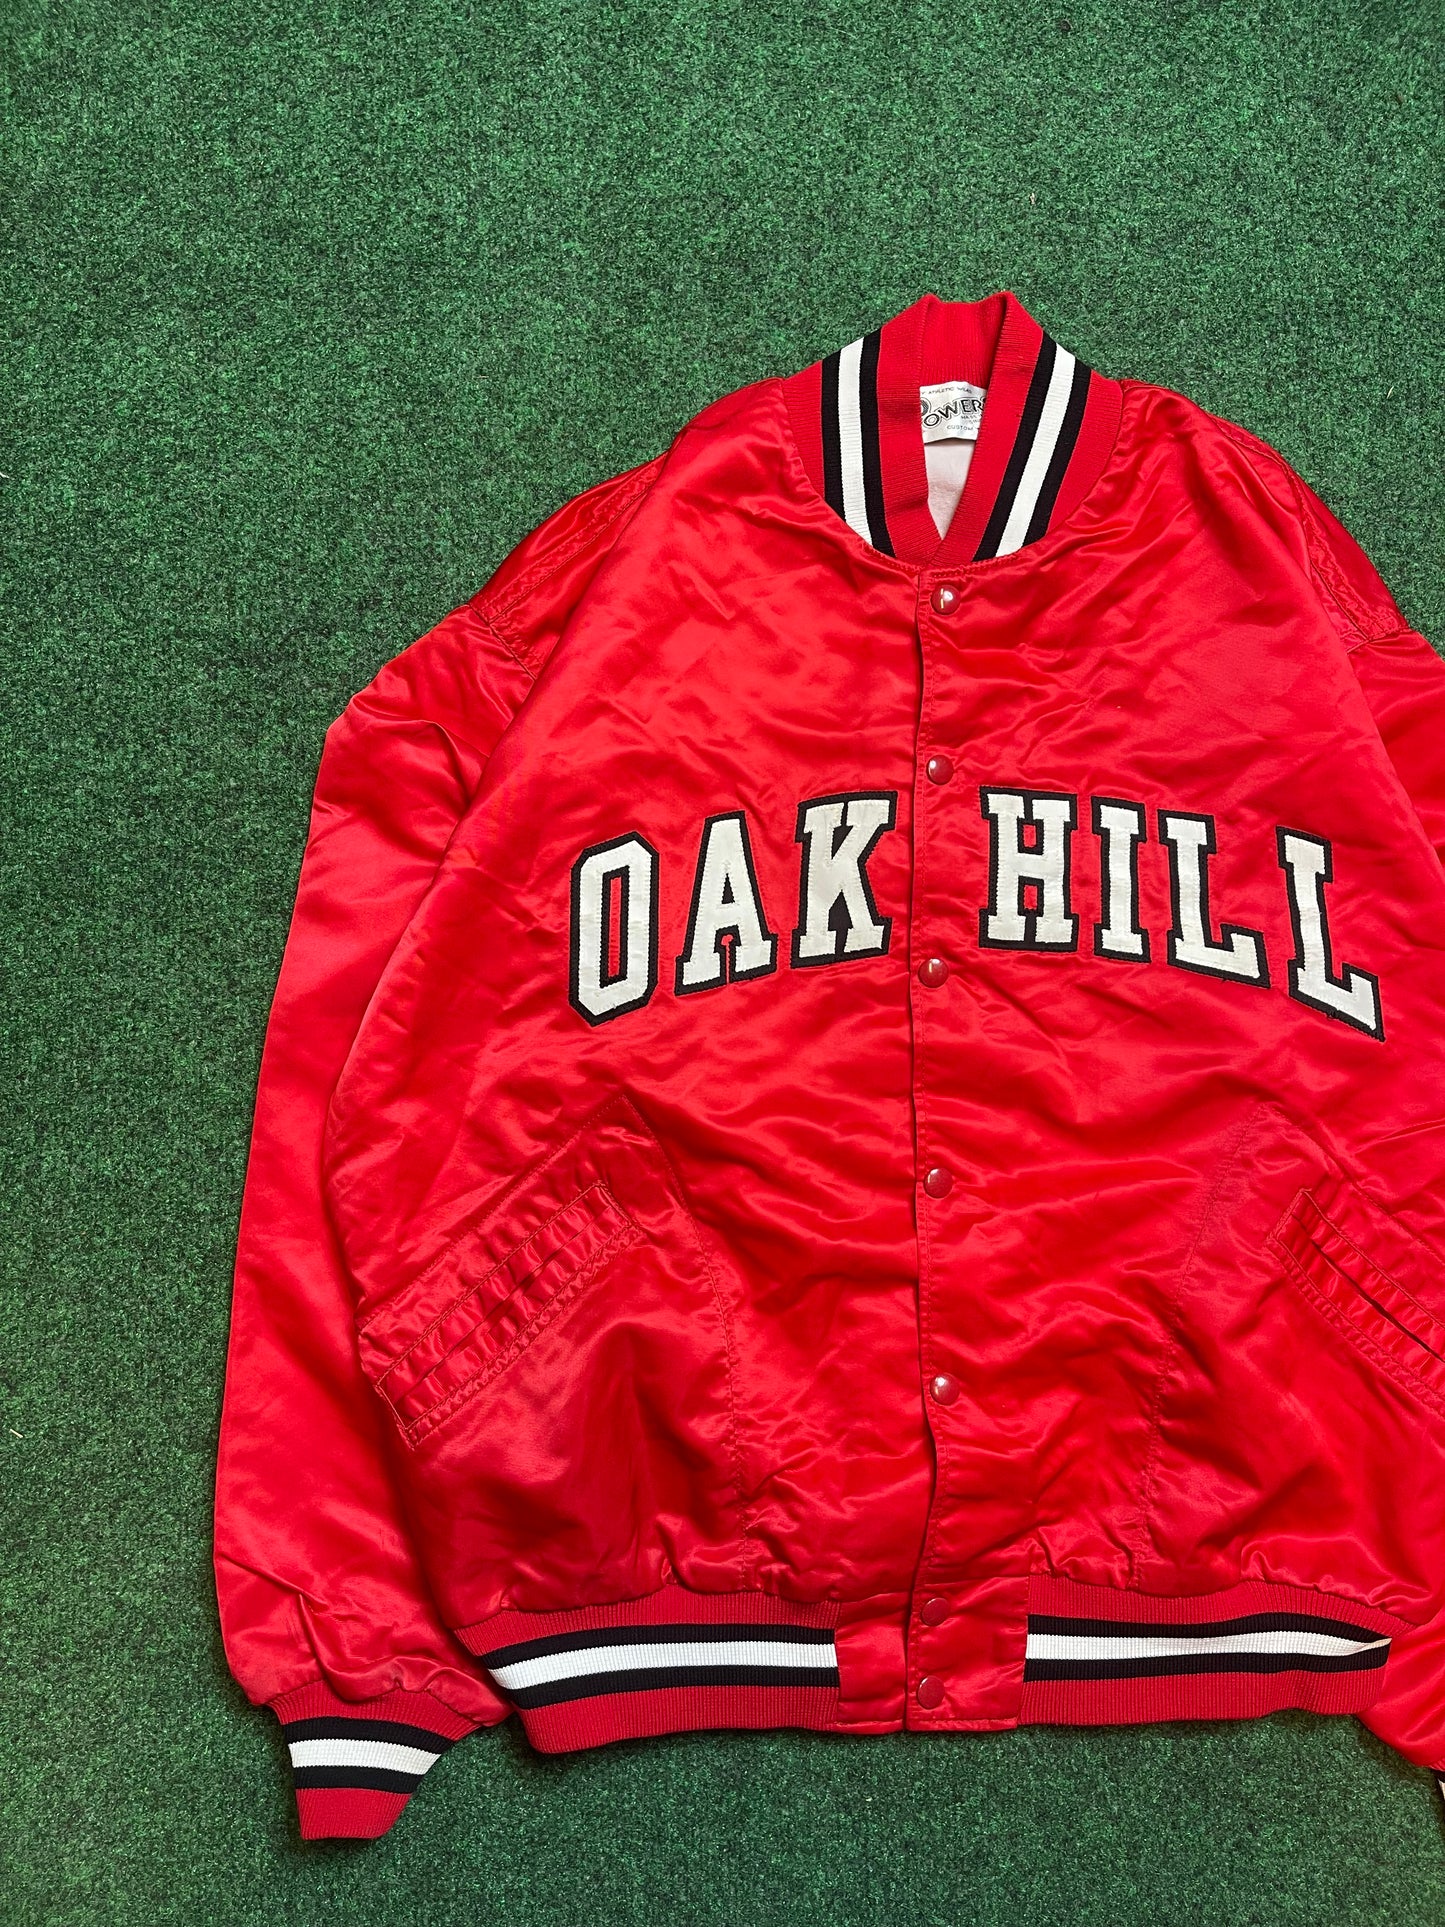 80’s Oak Hill Vintage Satin Jacket (Large)